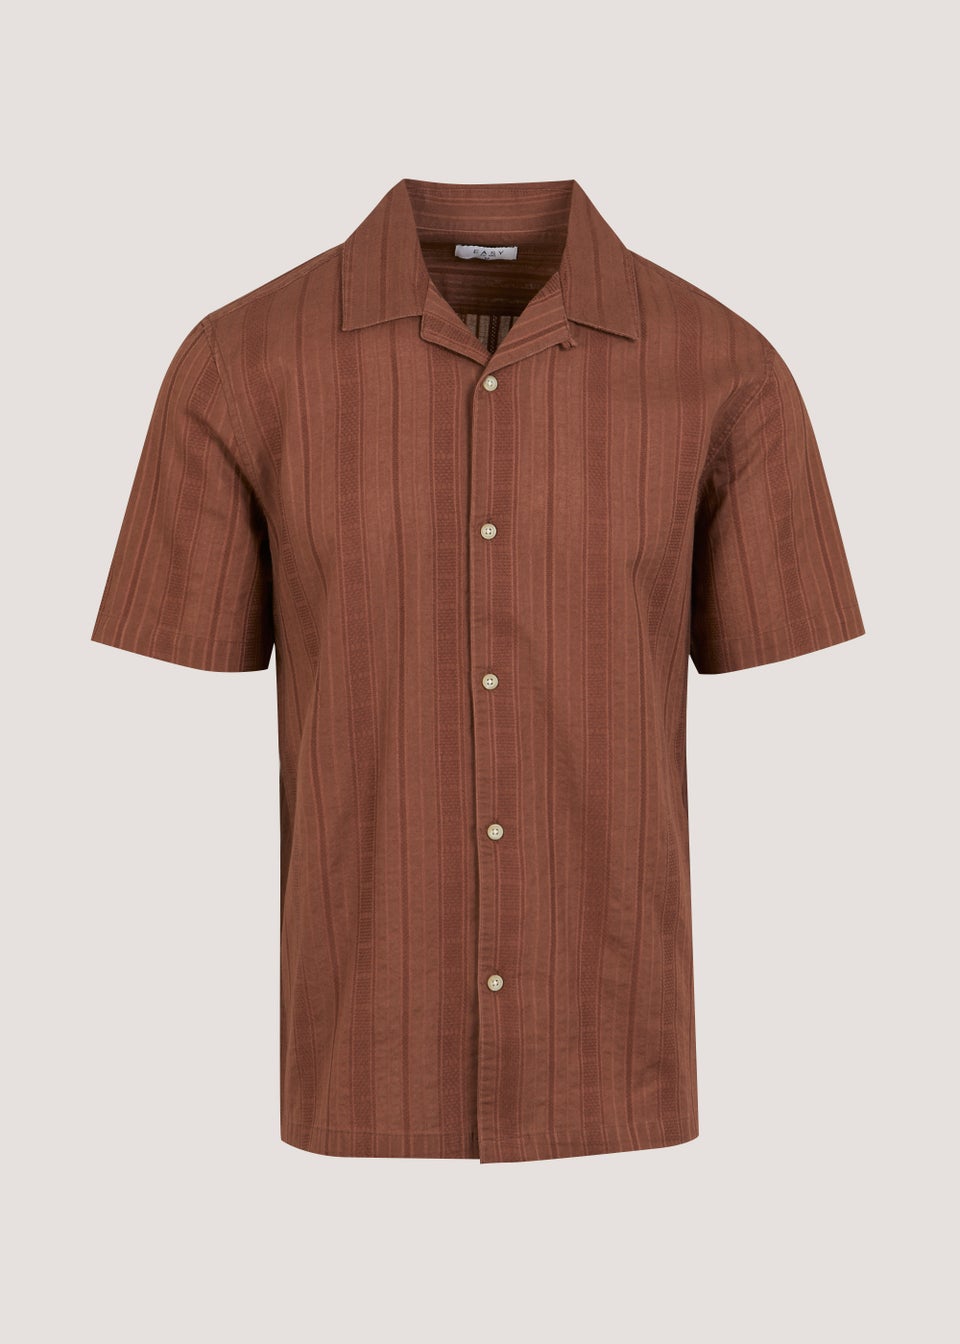 Rust Textured Short Sleeve Shirt